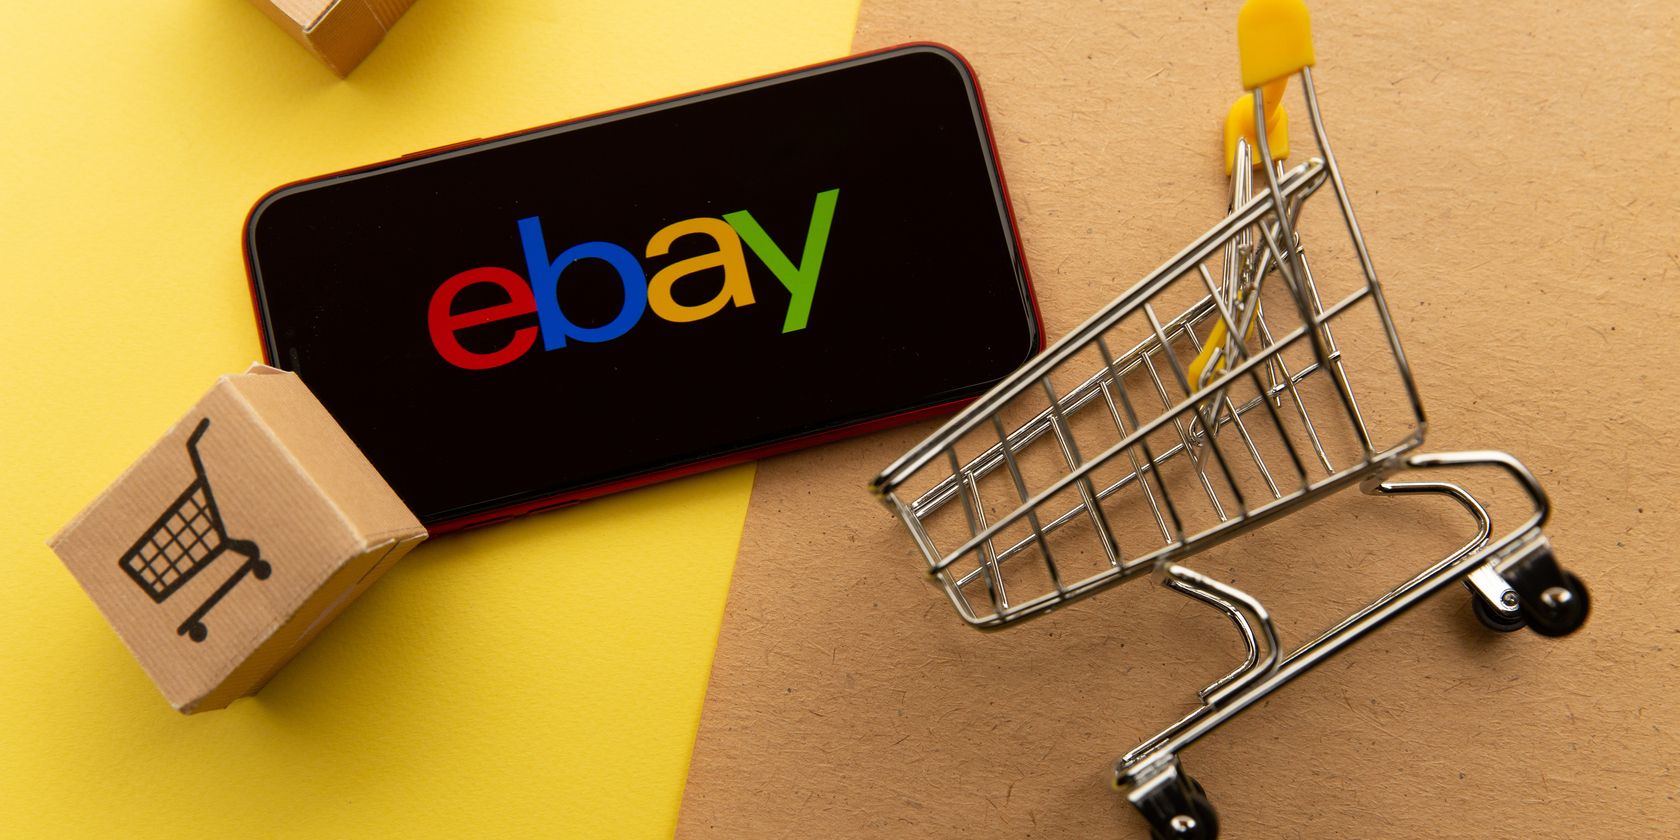 ebay-логотип-на-телефоне рядом с корзиной